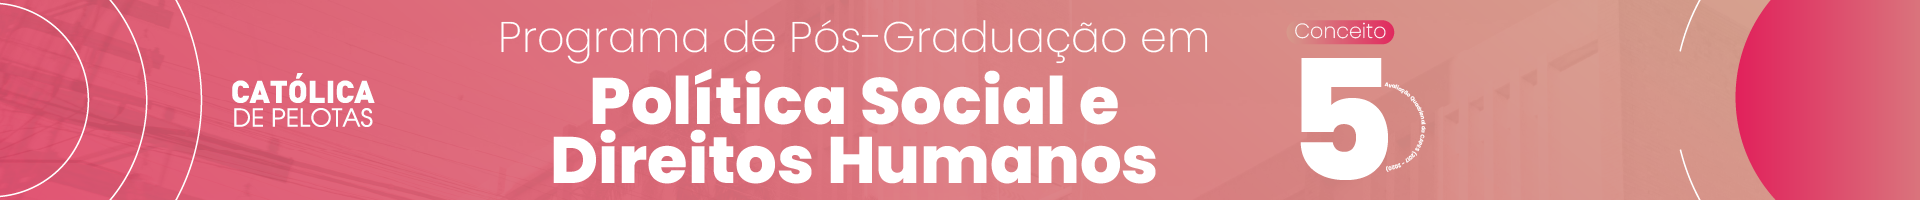 Programa de Pós-graduação em Política Social e Direitos Humanos